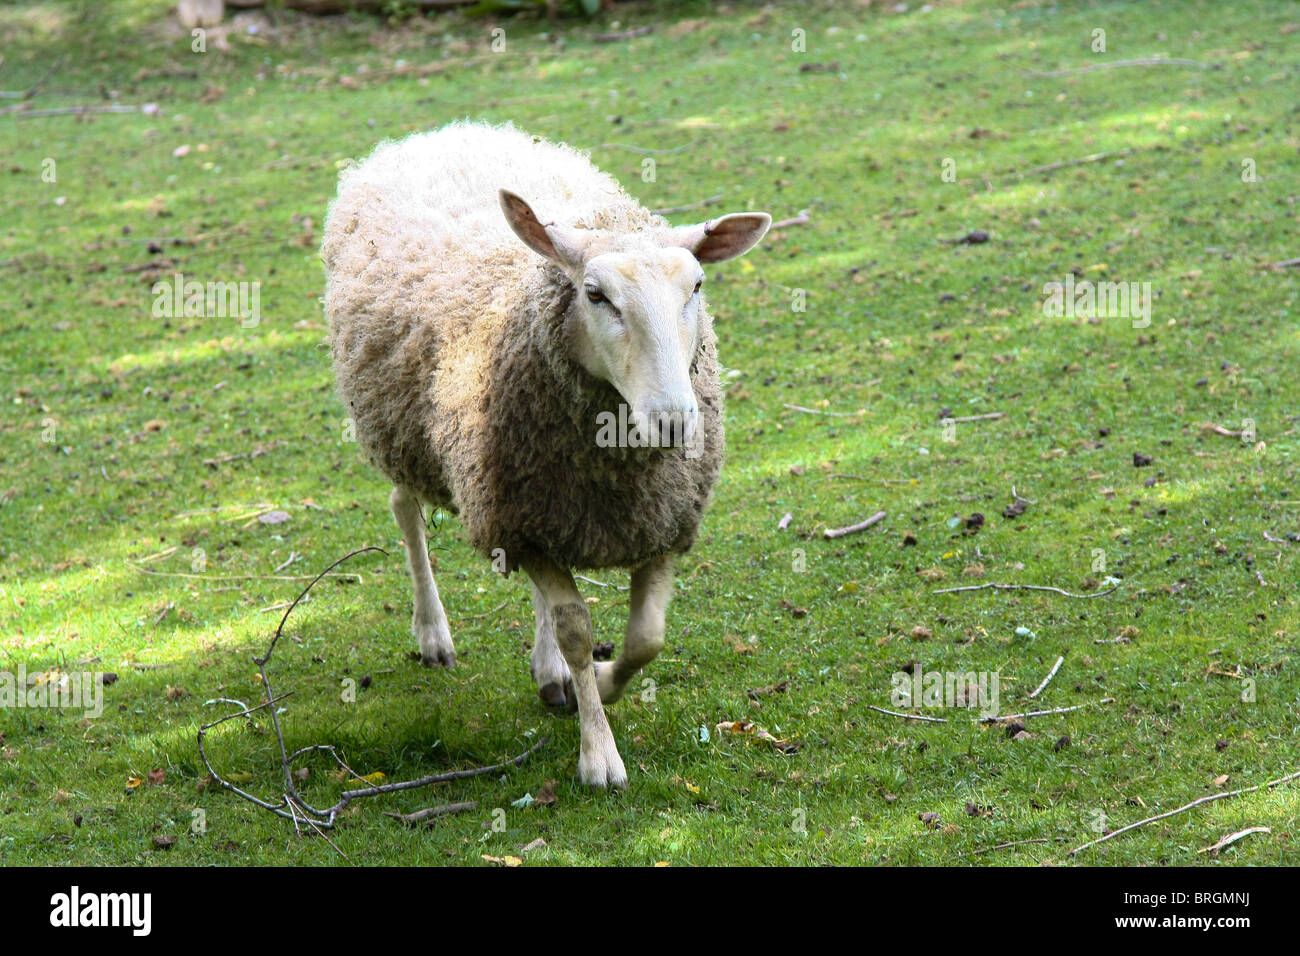 sheep farm grass outdoor Stock Photo